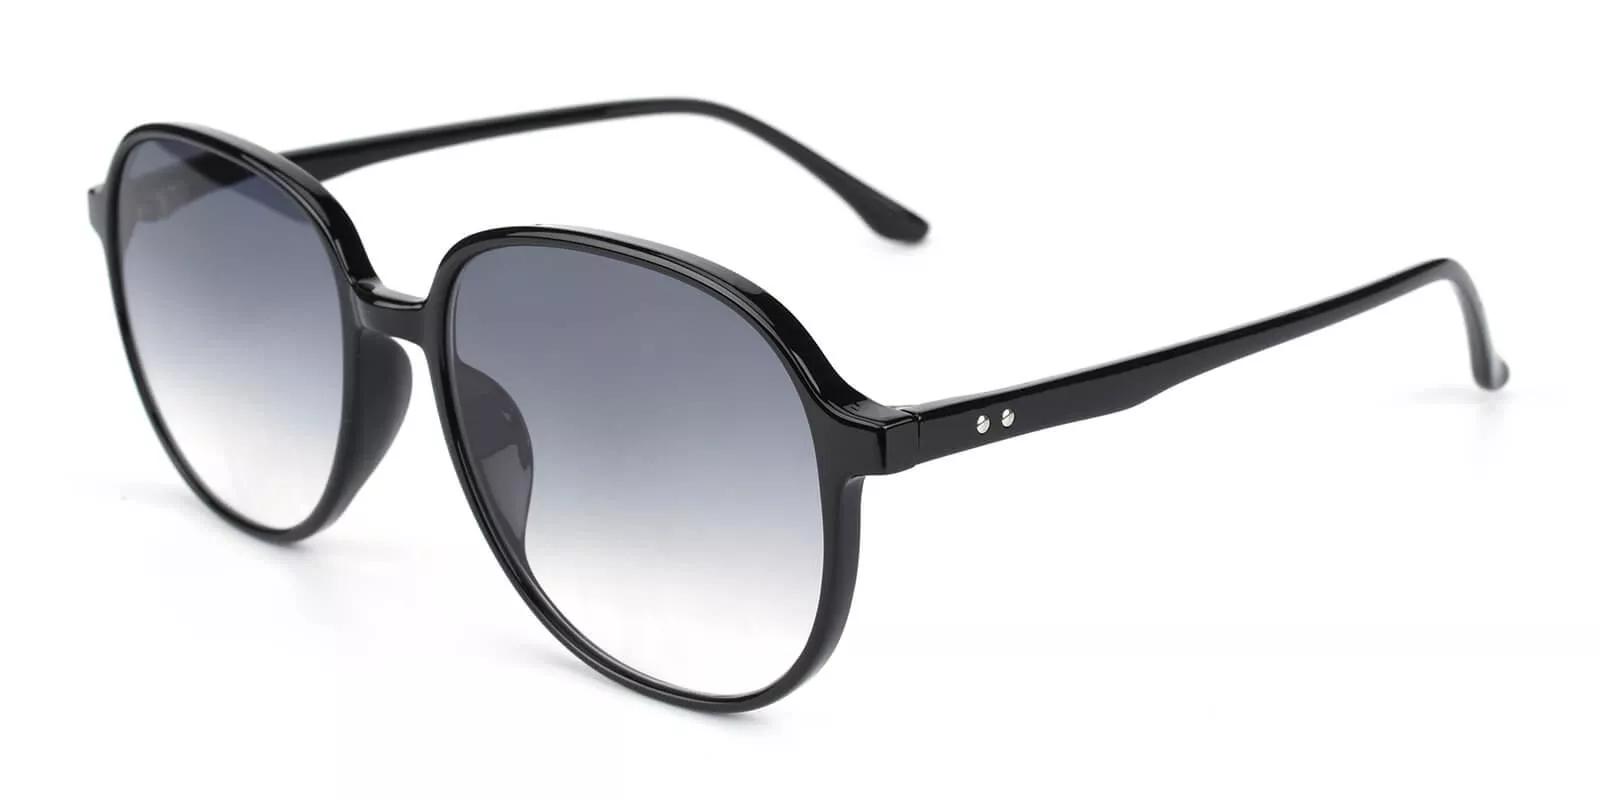 Palm Bay Prescription Sunglasses Black